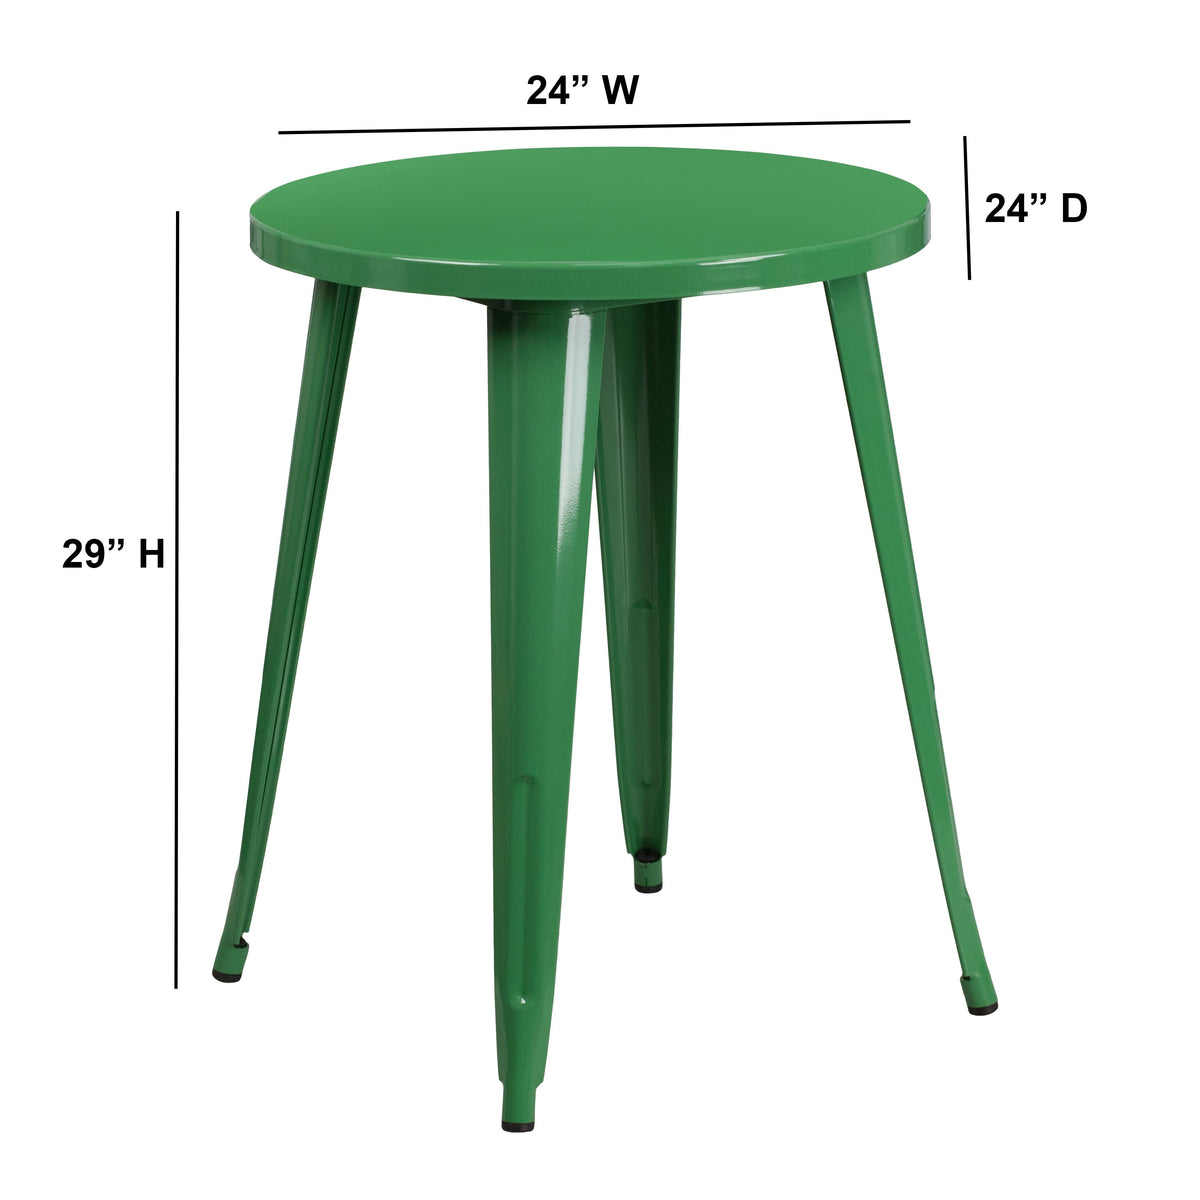 Green |#| 24inch Round Green Metal Indoor-Outdoor Table - Restaurant Furniture